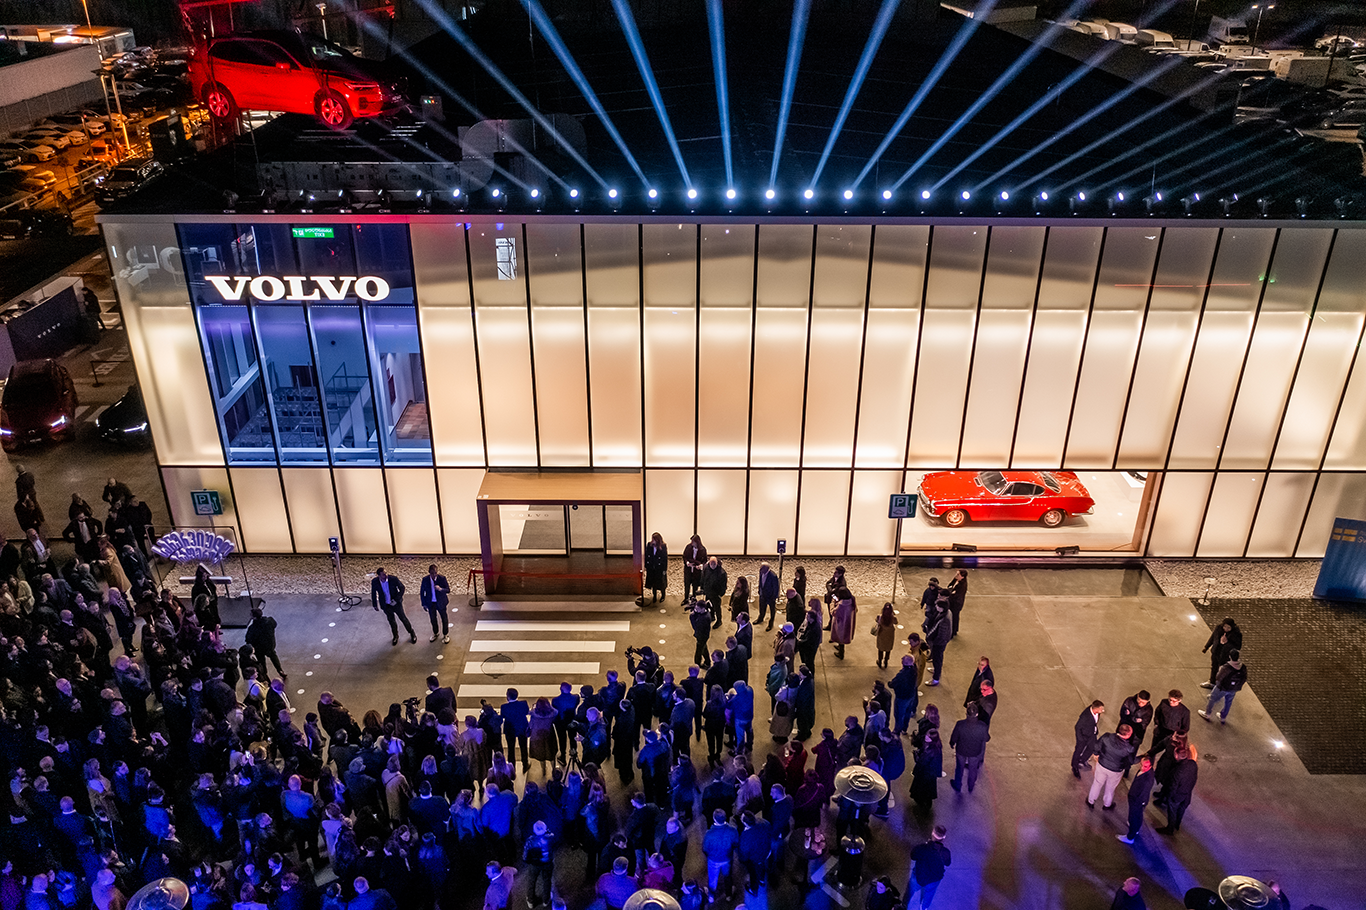 Volvo Retail Experience - ვოლვო ქარ საქართველოს შოურუმის გახსნისთვის ქართველი არტისტები გაერთიანდნენ